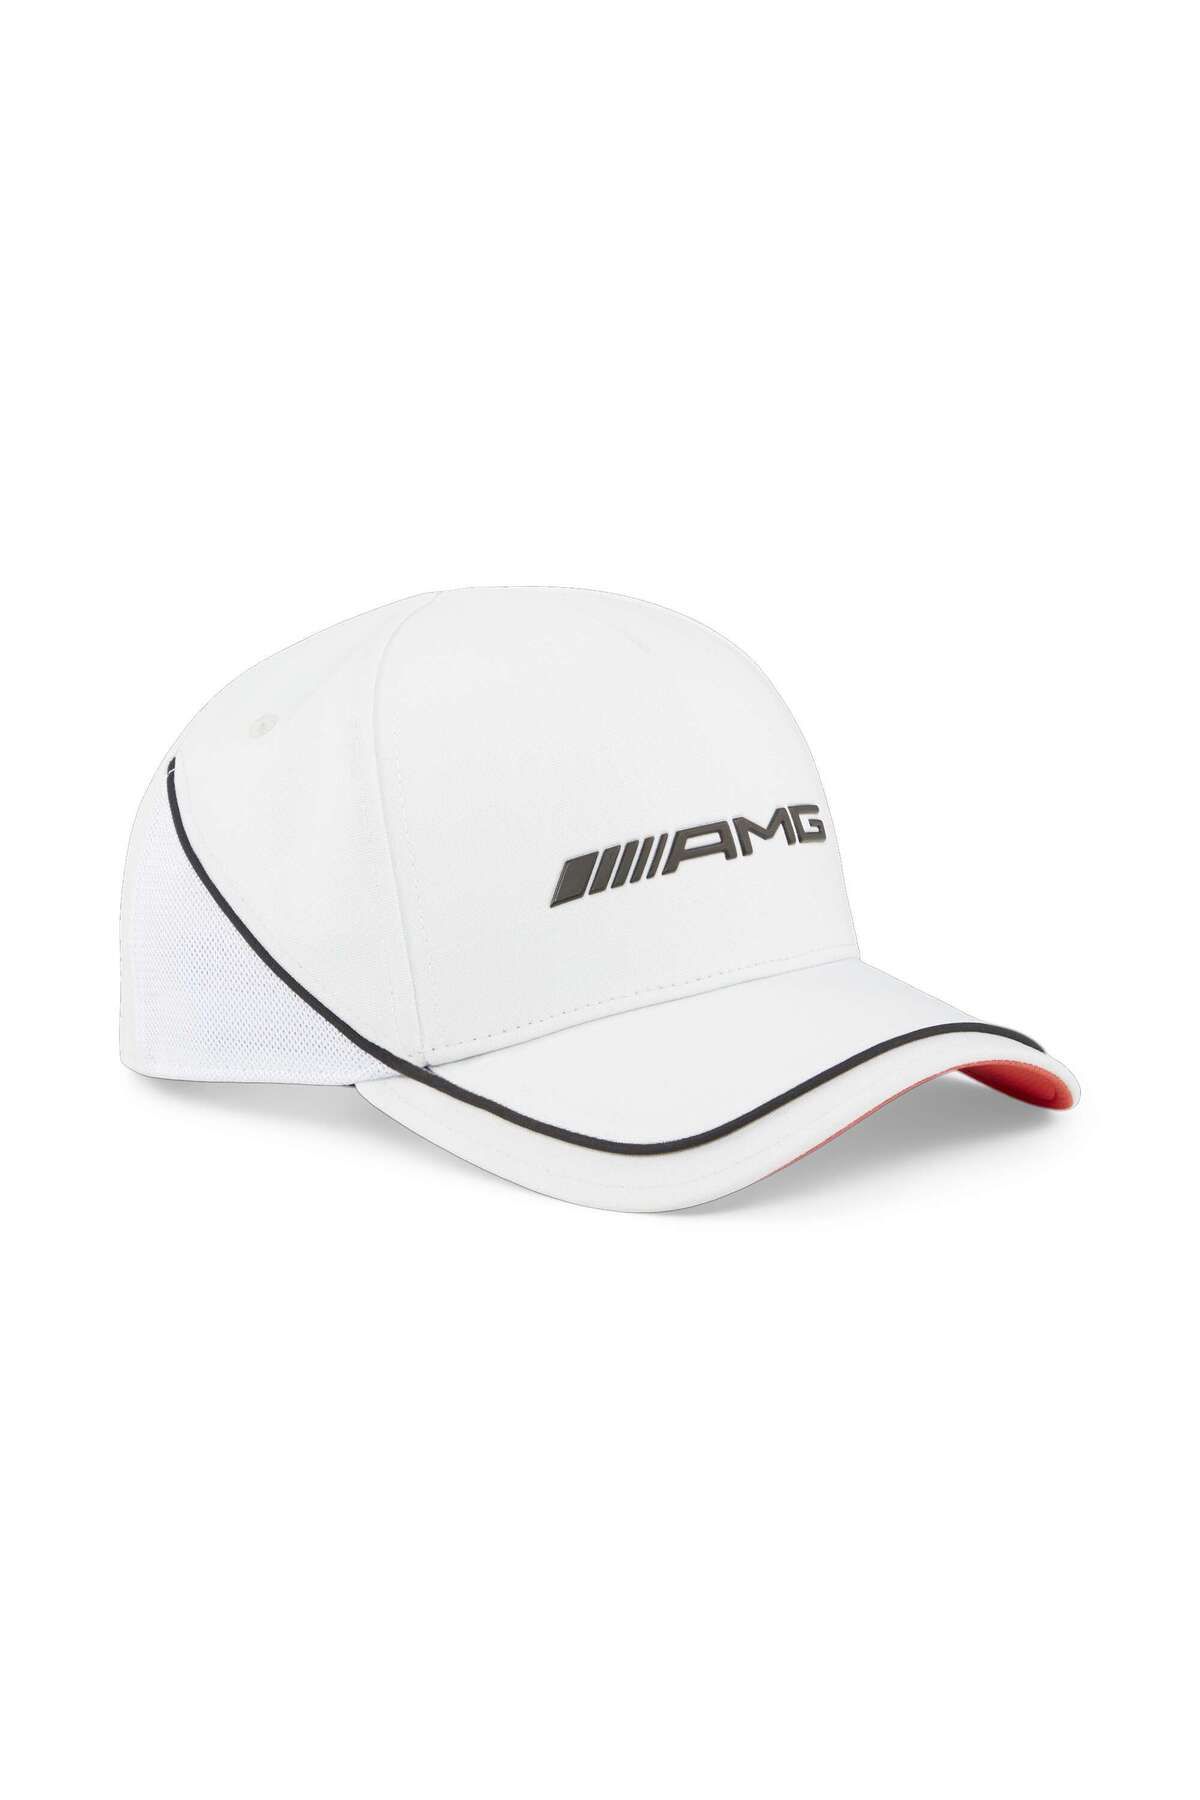 Puma AMG BB Cap Şapka Beyaz Unisex